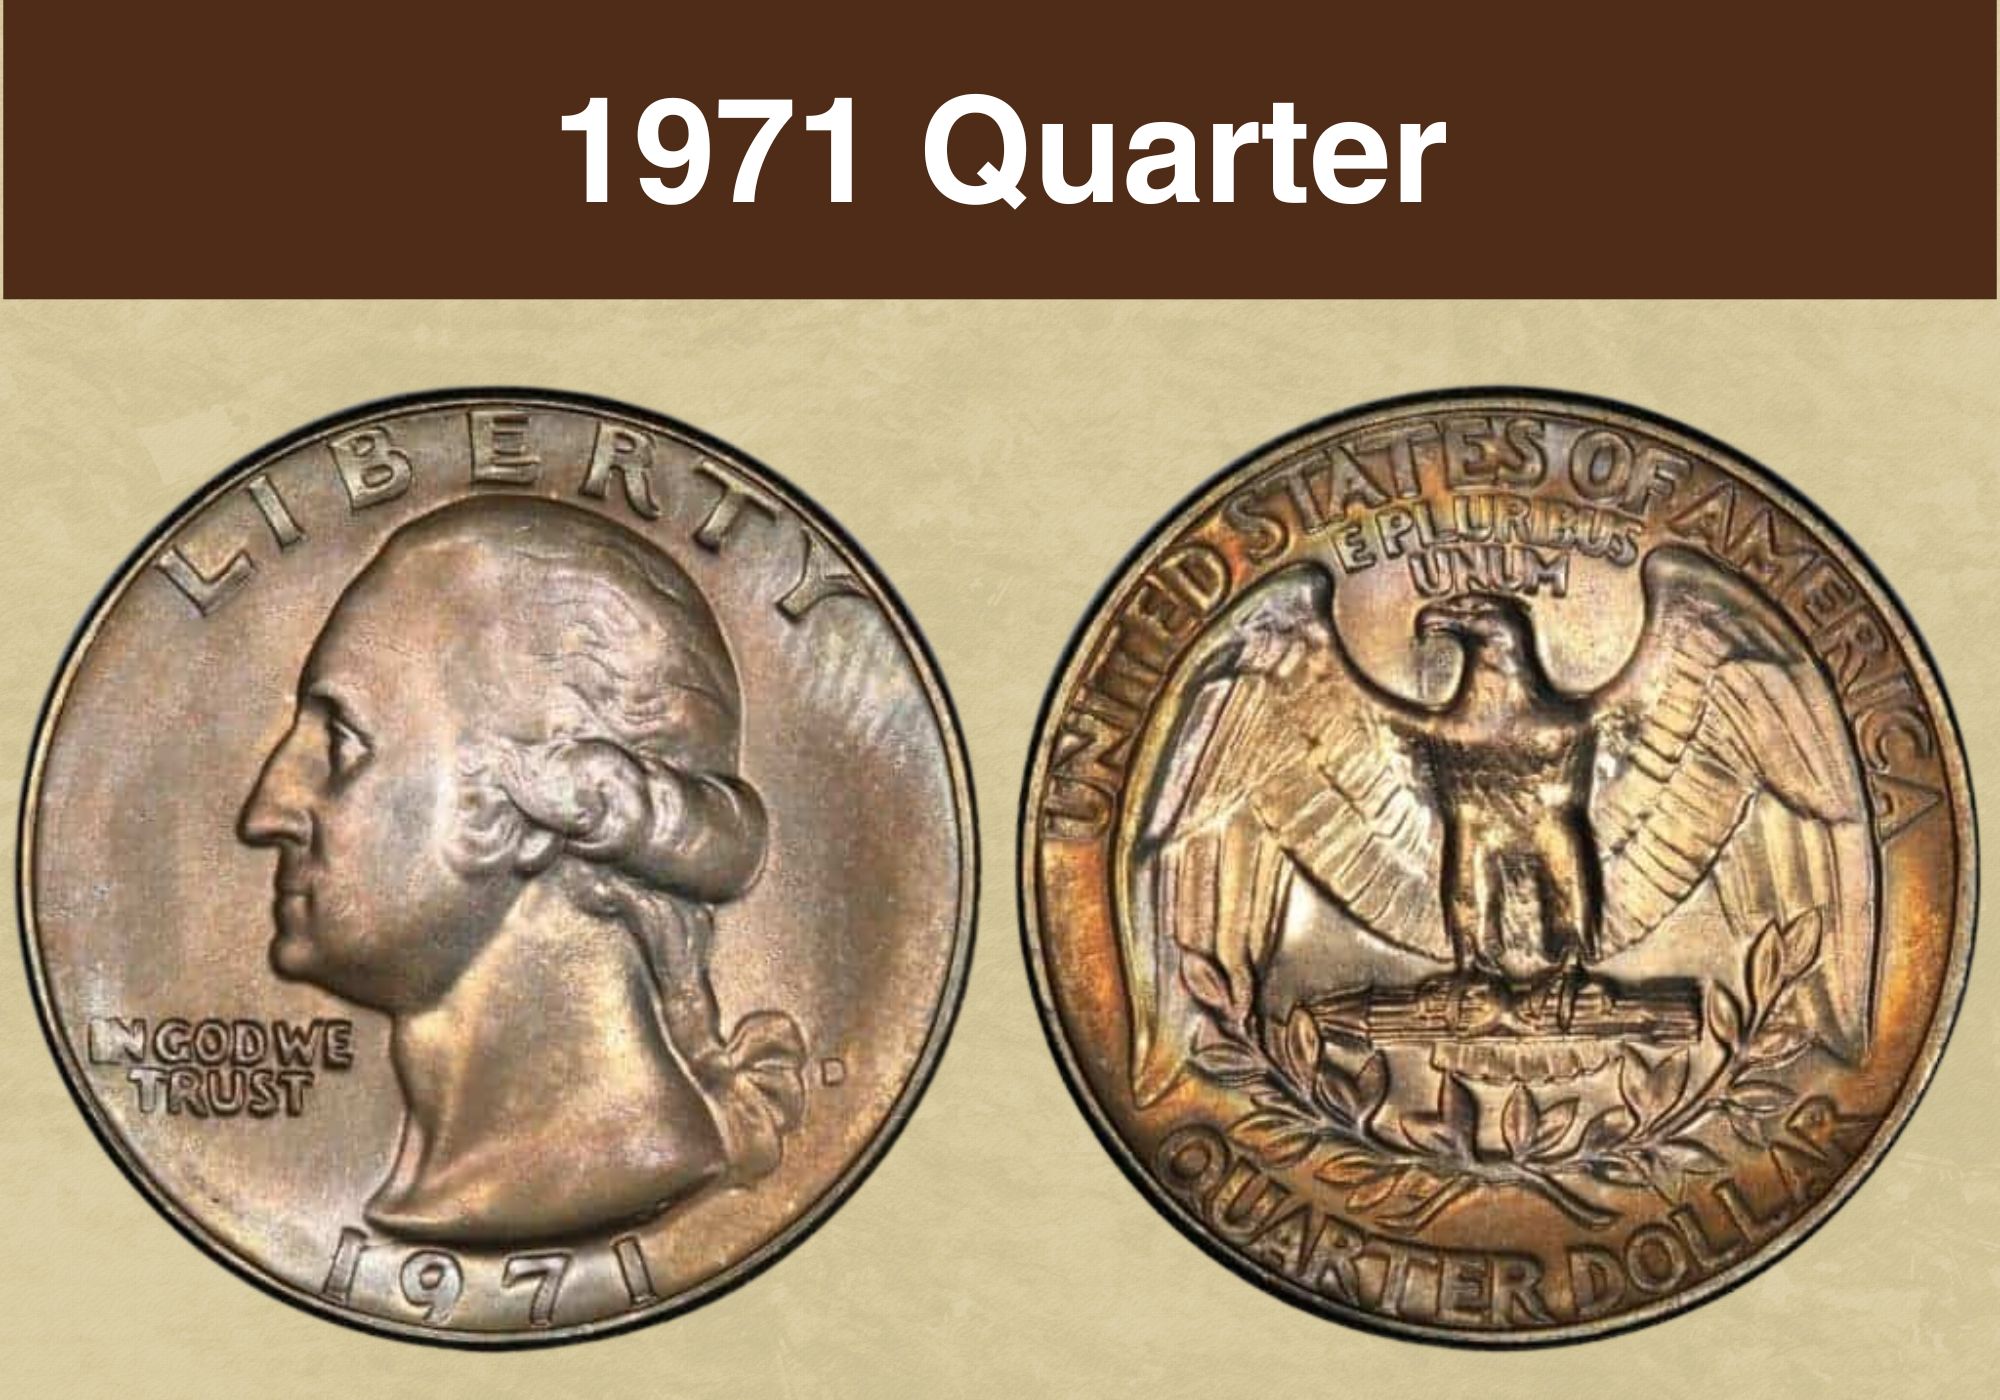 1971 Quarter Value